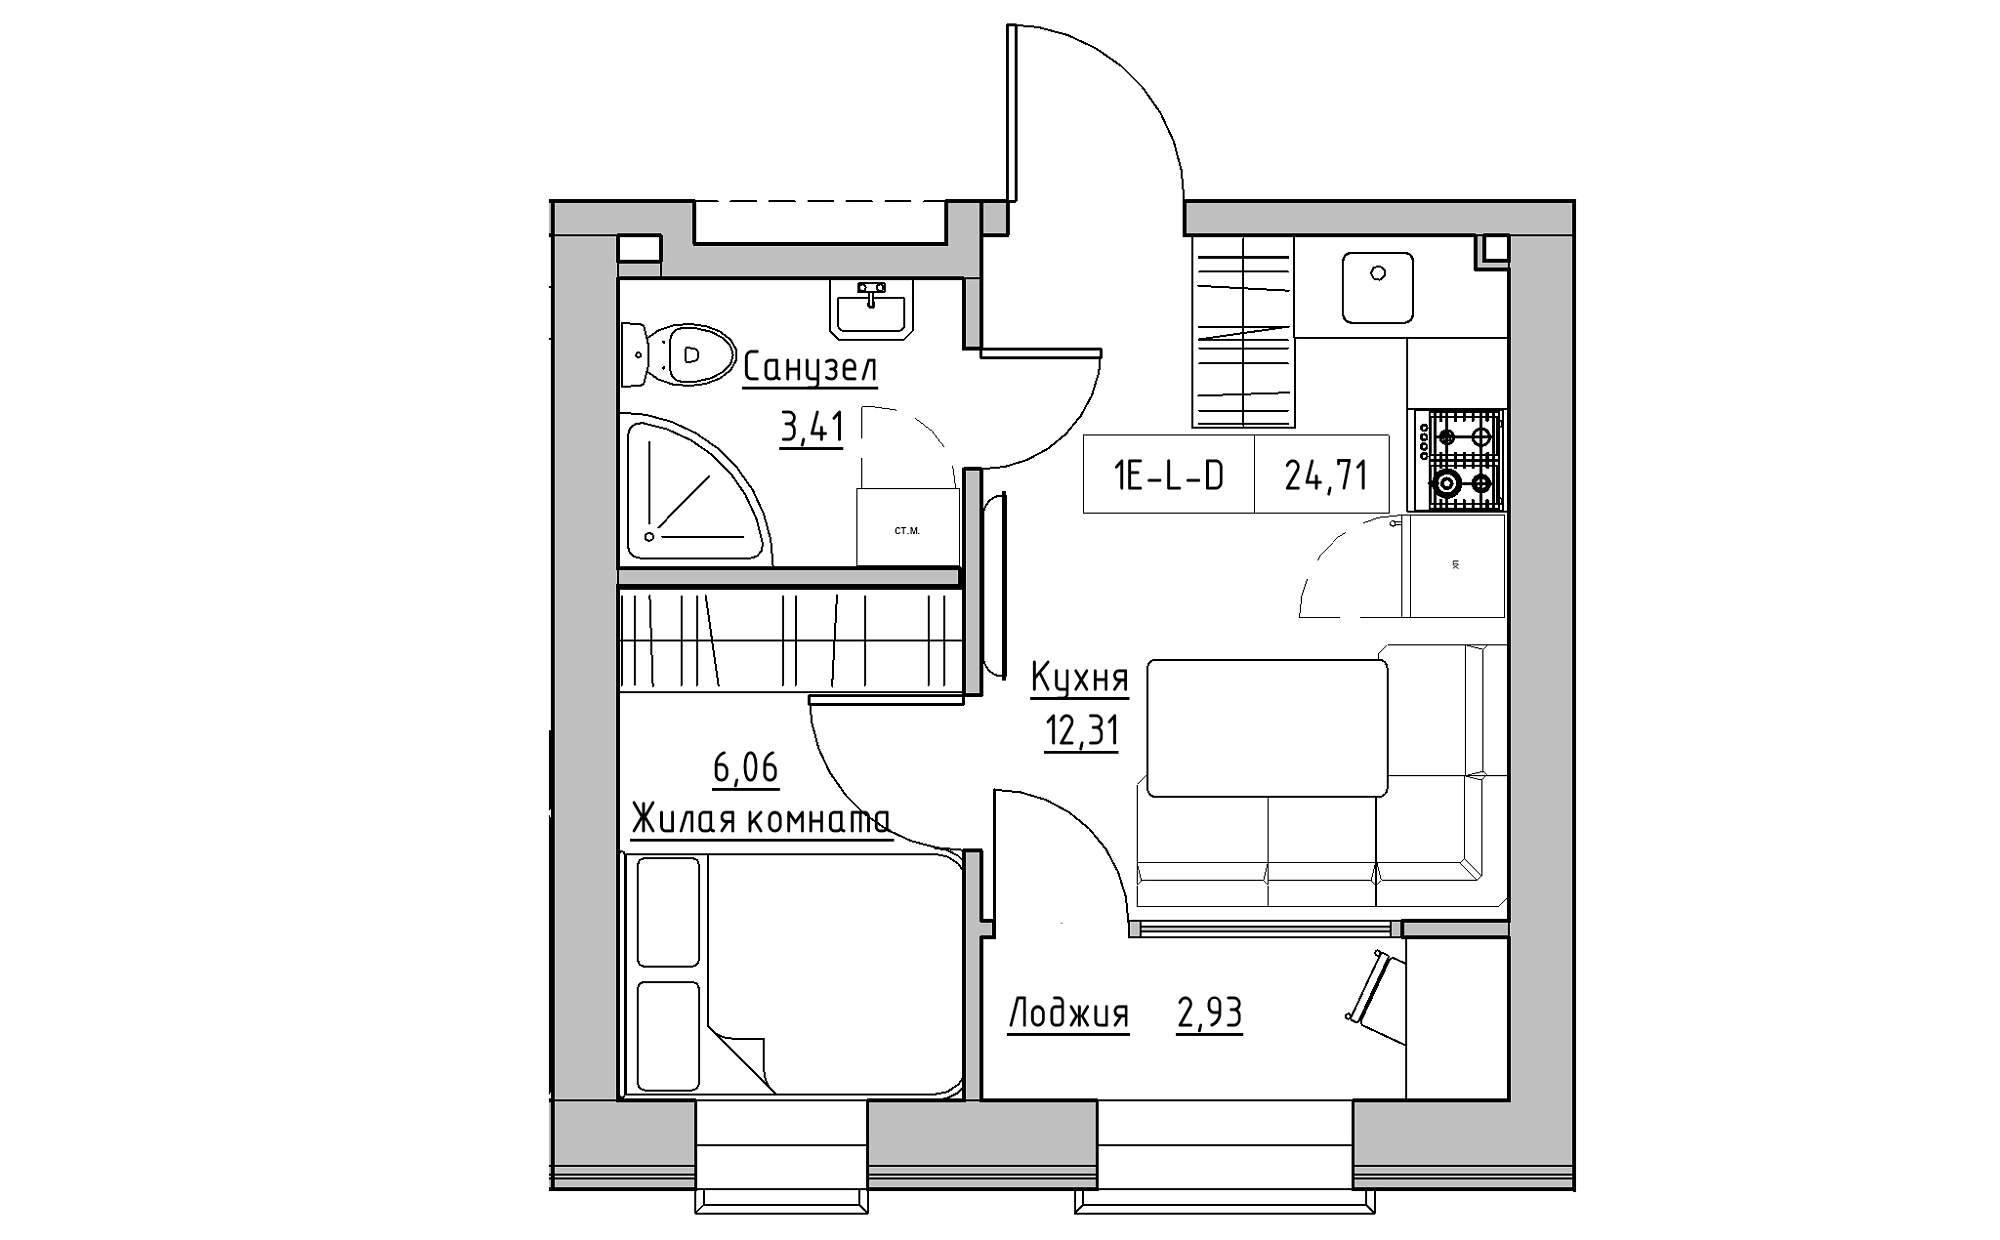 Планування 1-к квартира площею 24.71м2, KS-022-02/0002.